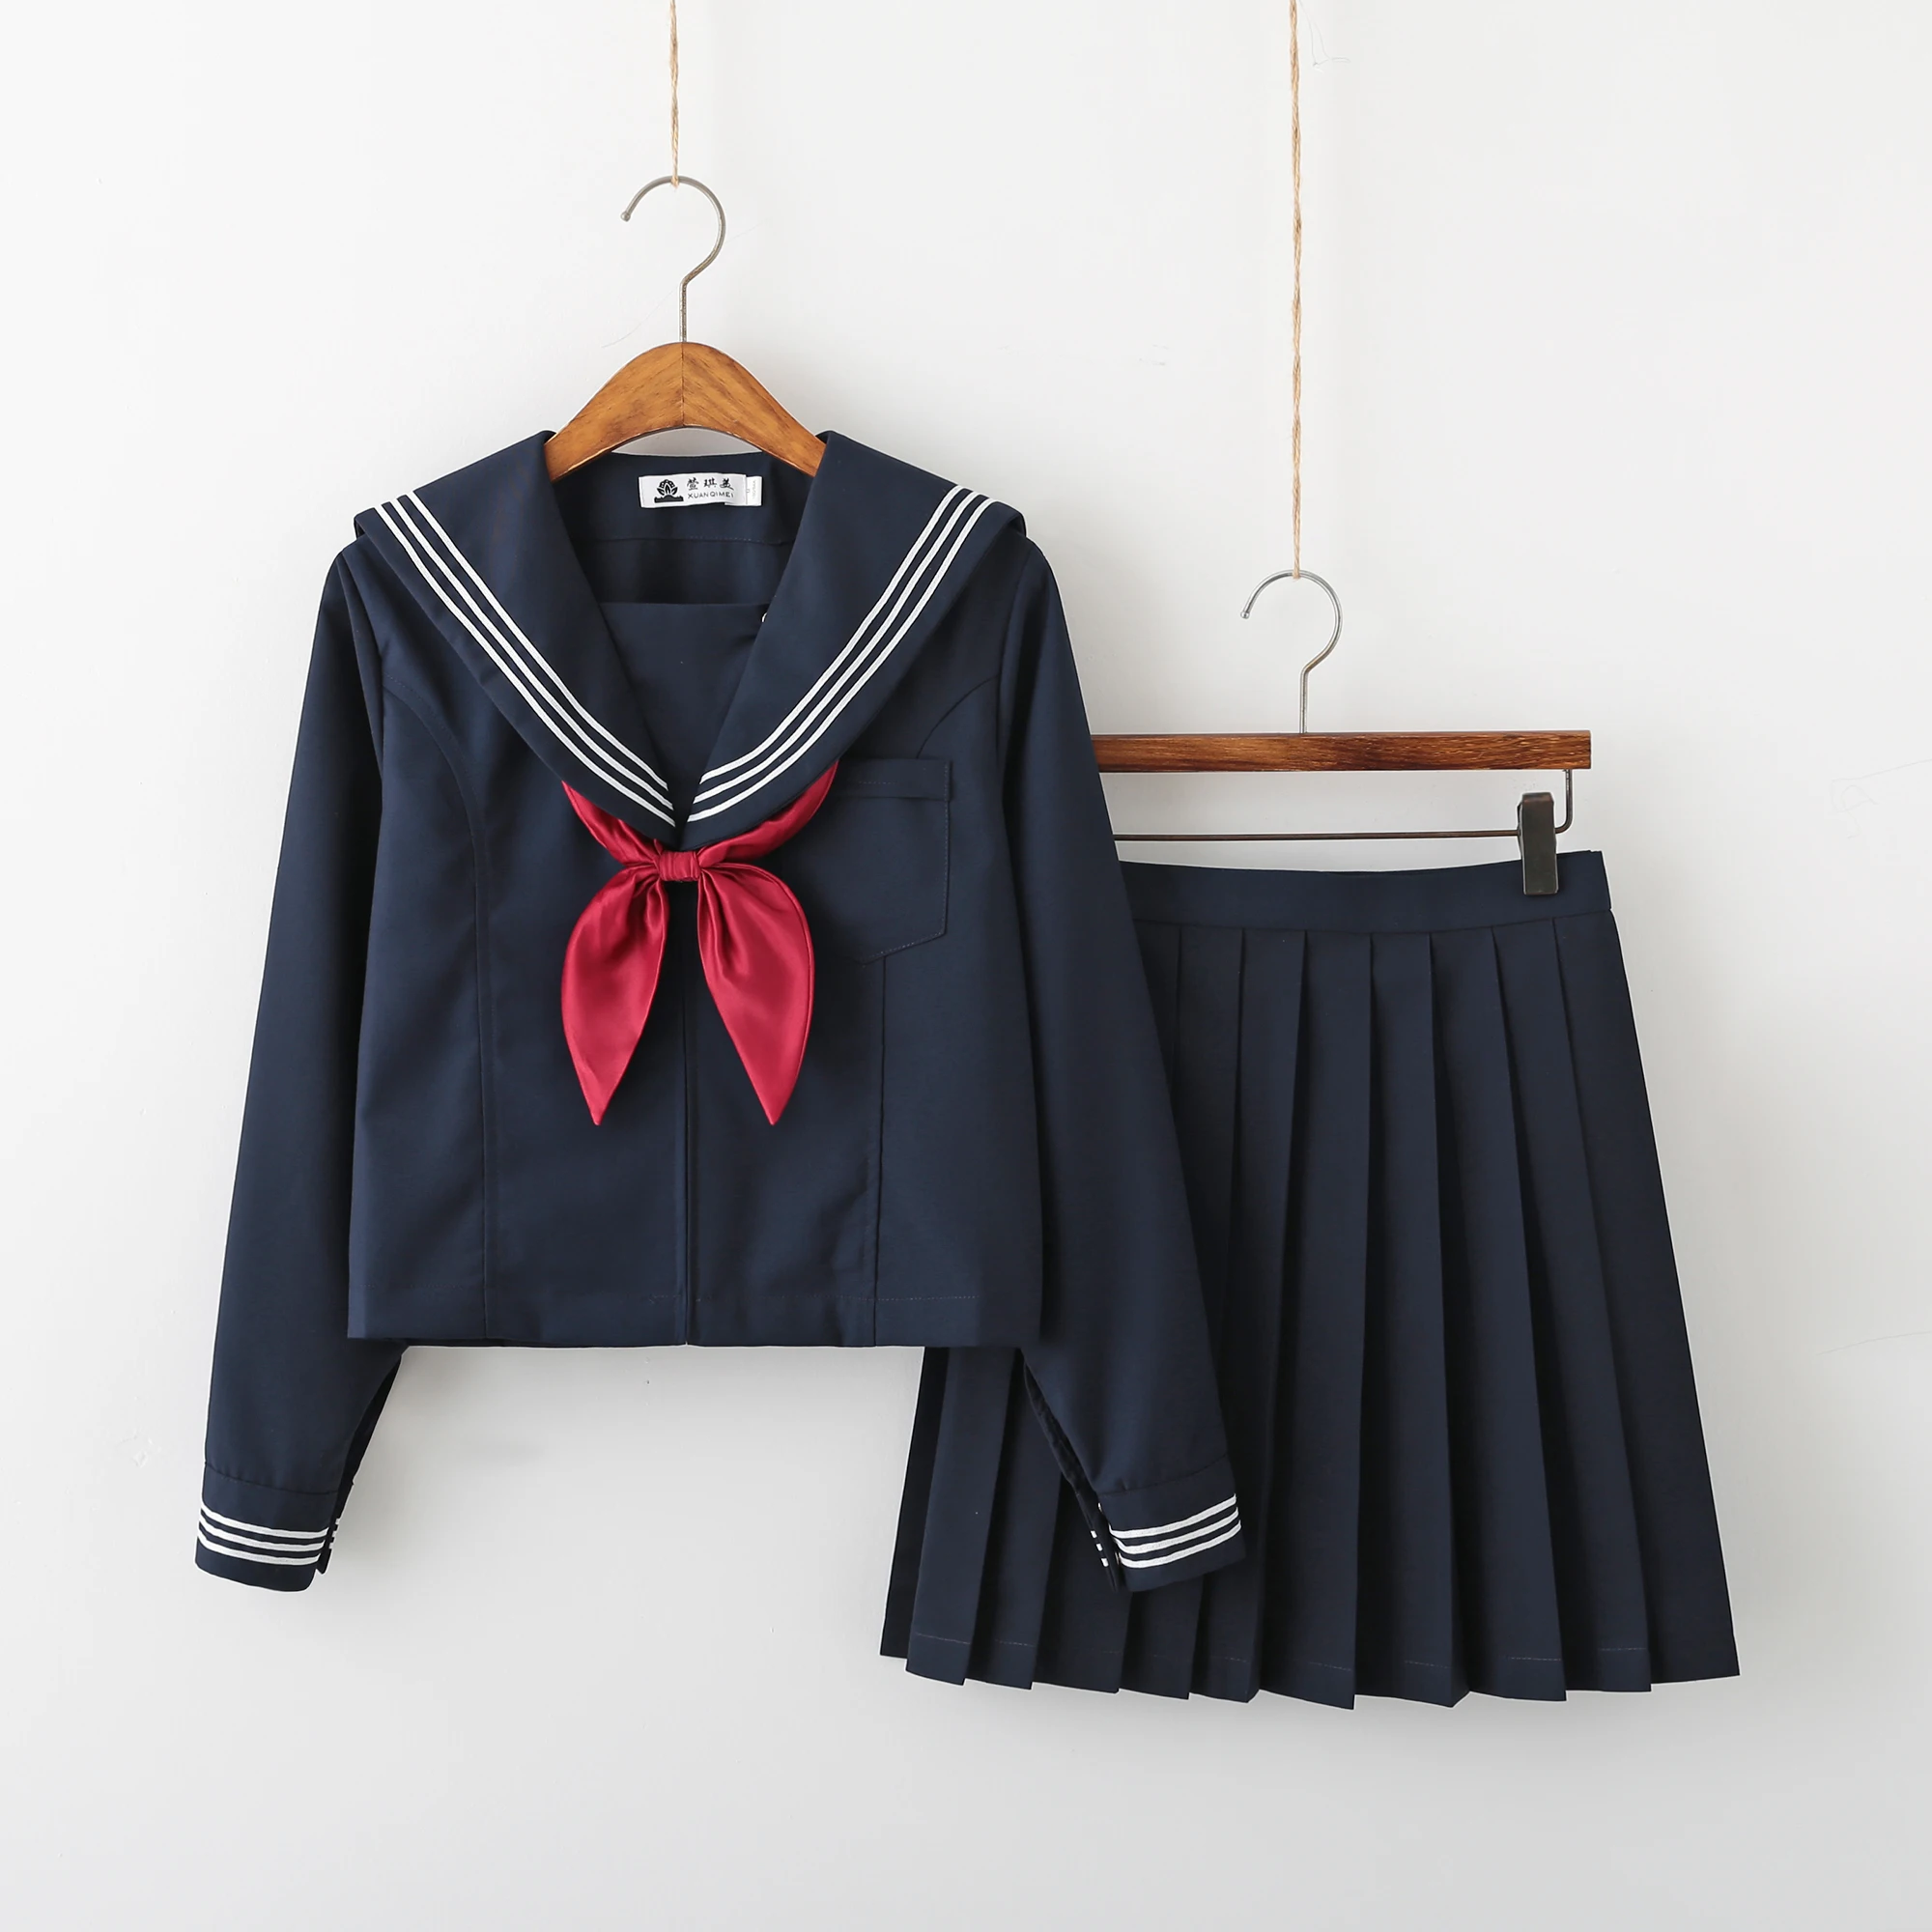 Navy blue JK uniform Autumn Summer Short/long Sleeve Japanese School Uniforms For Girls Sailor Pleated Skirt JK Sets Uniform